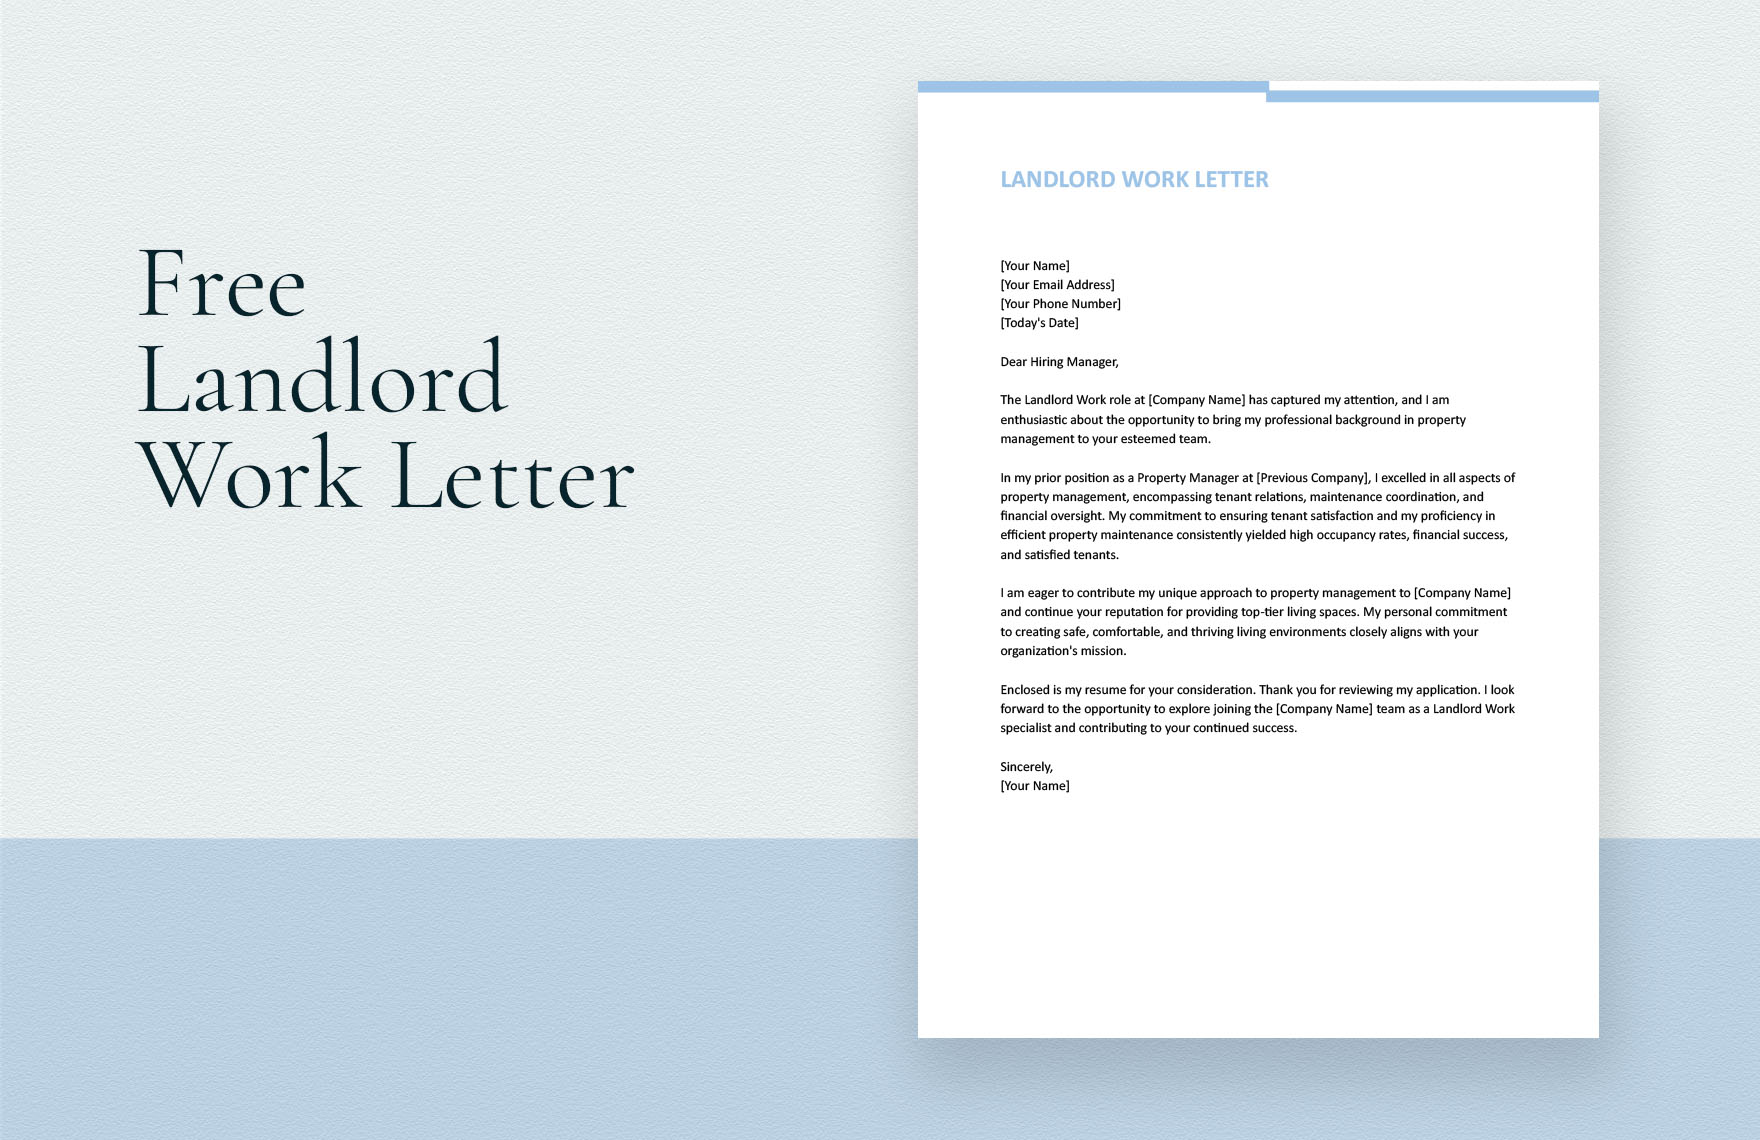 Landlord Work Letter